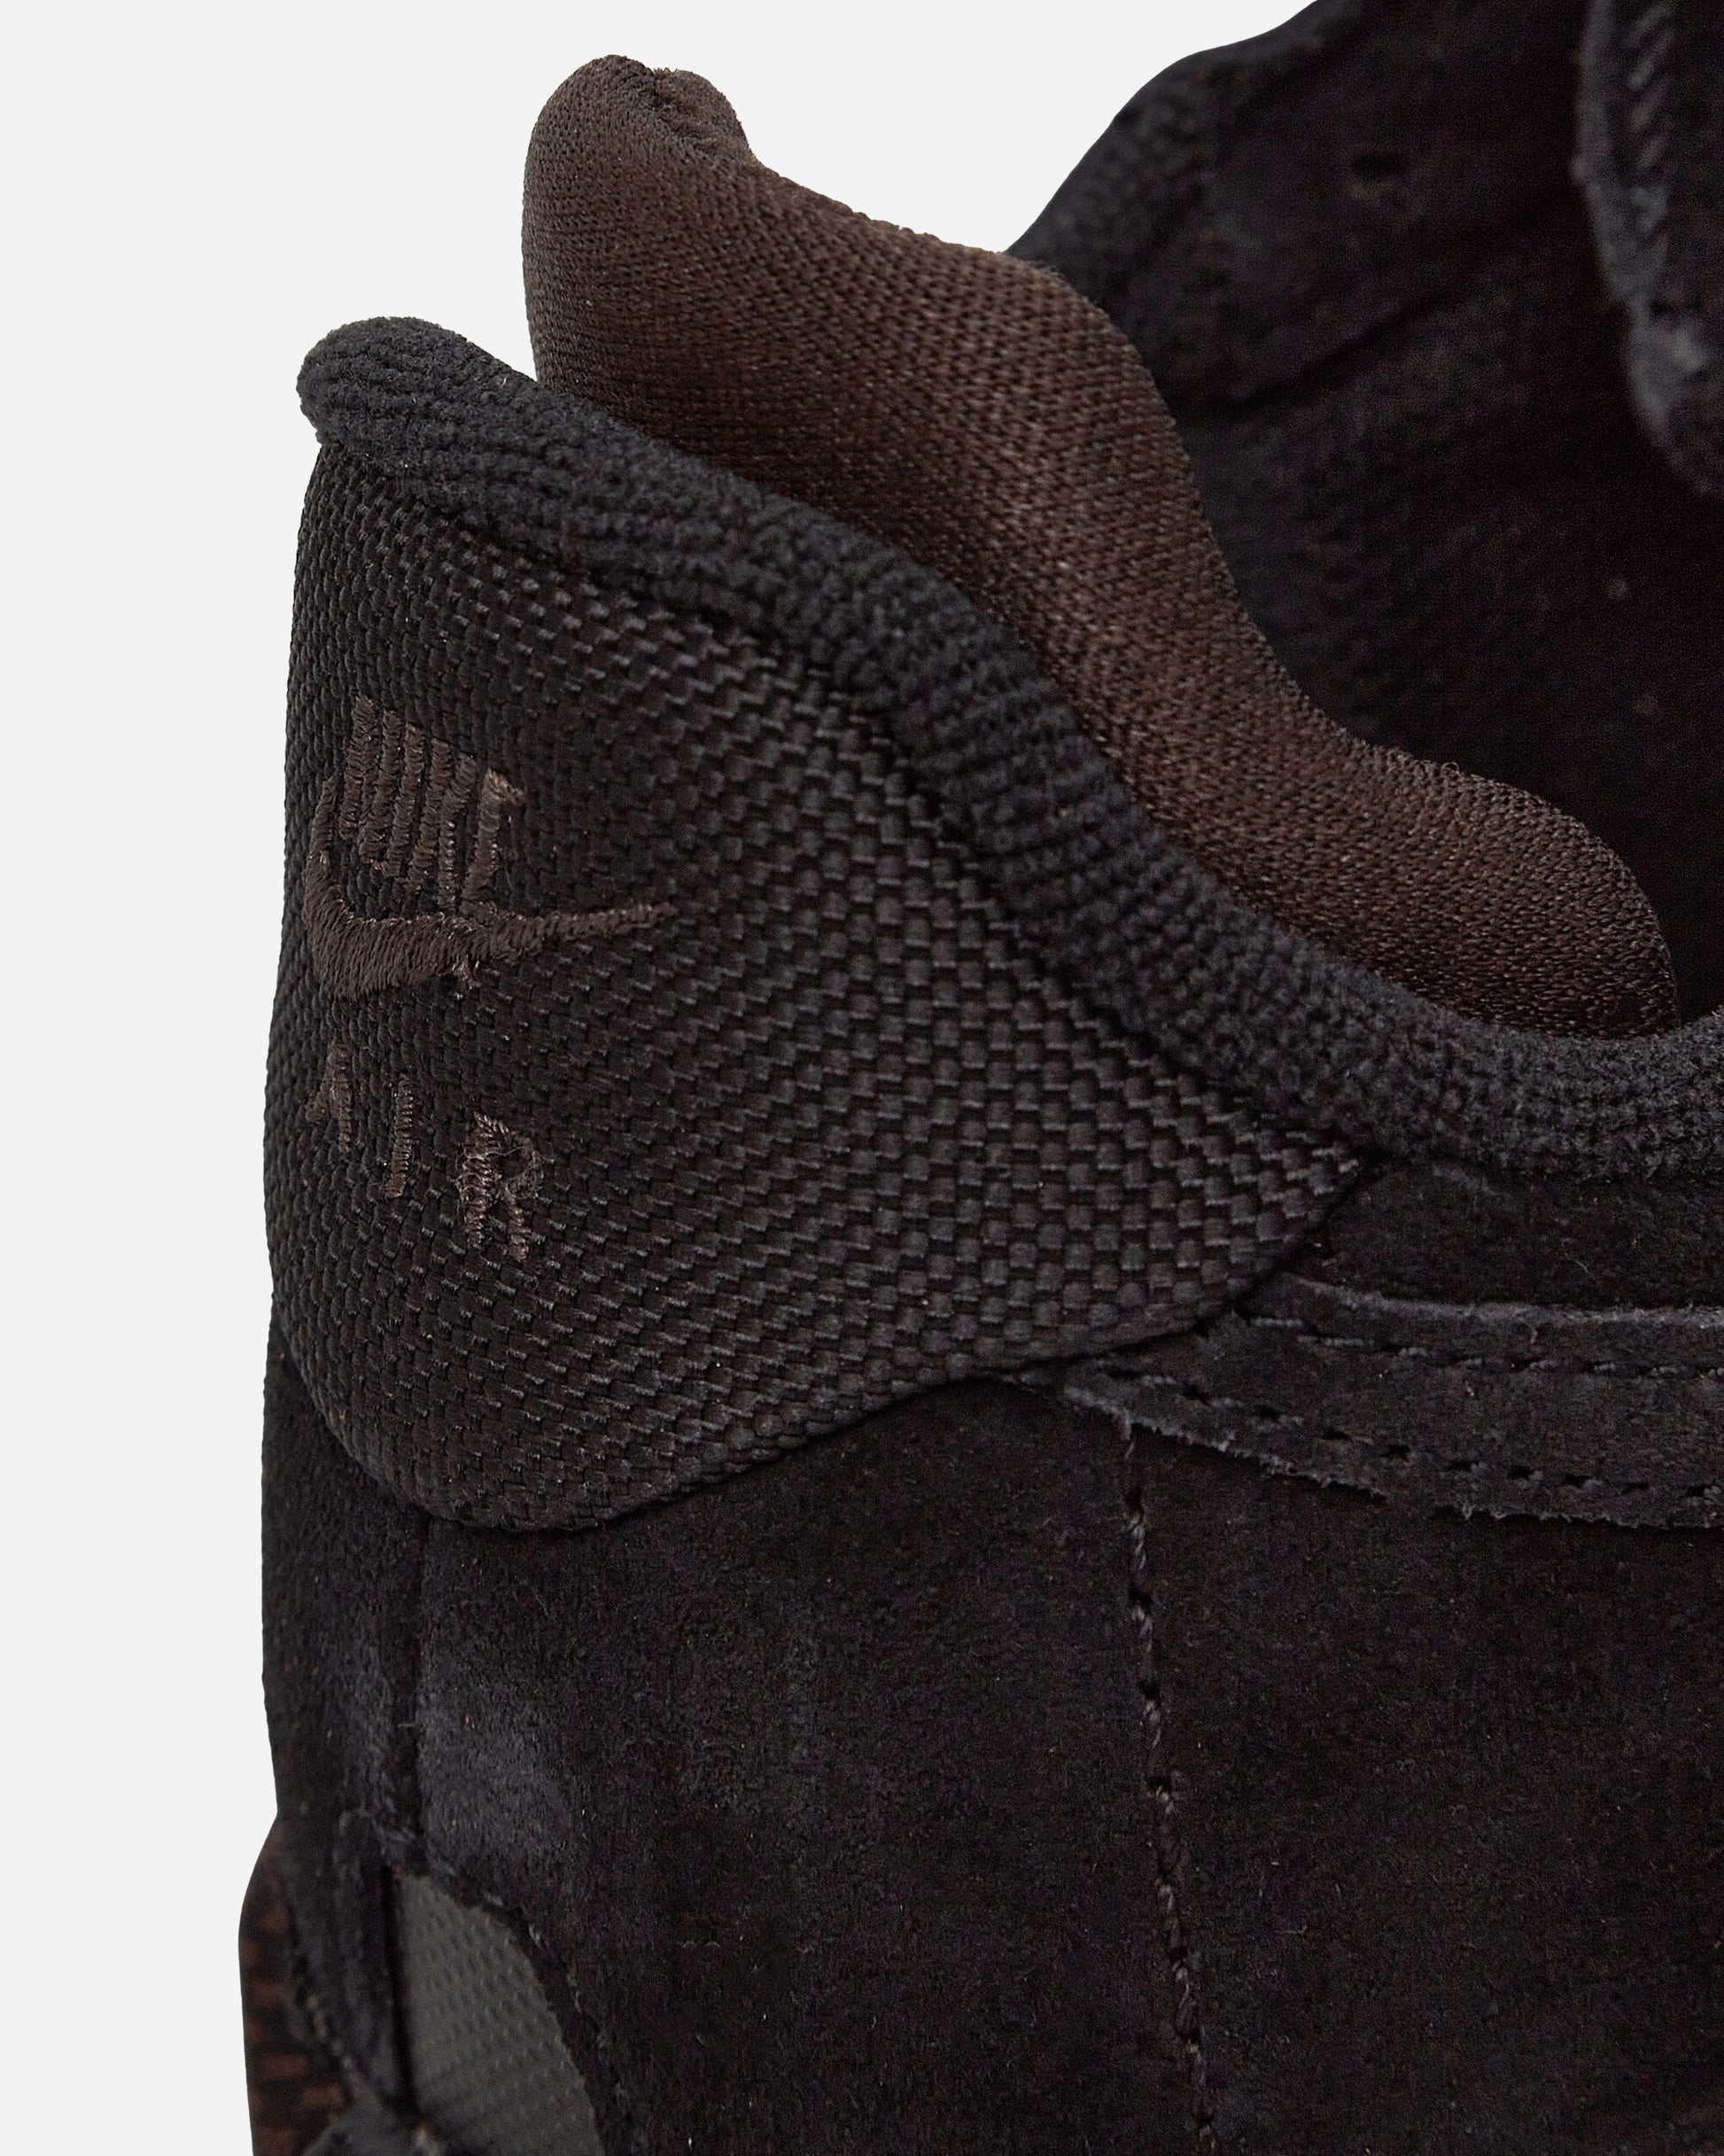 Nike Wmns Air Force 1 Wild Black/Velvet Brown Sneakers Low FB2348-001